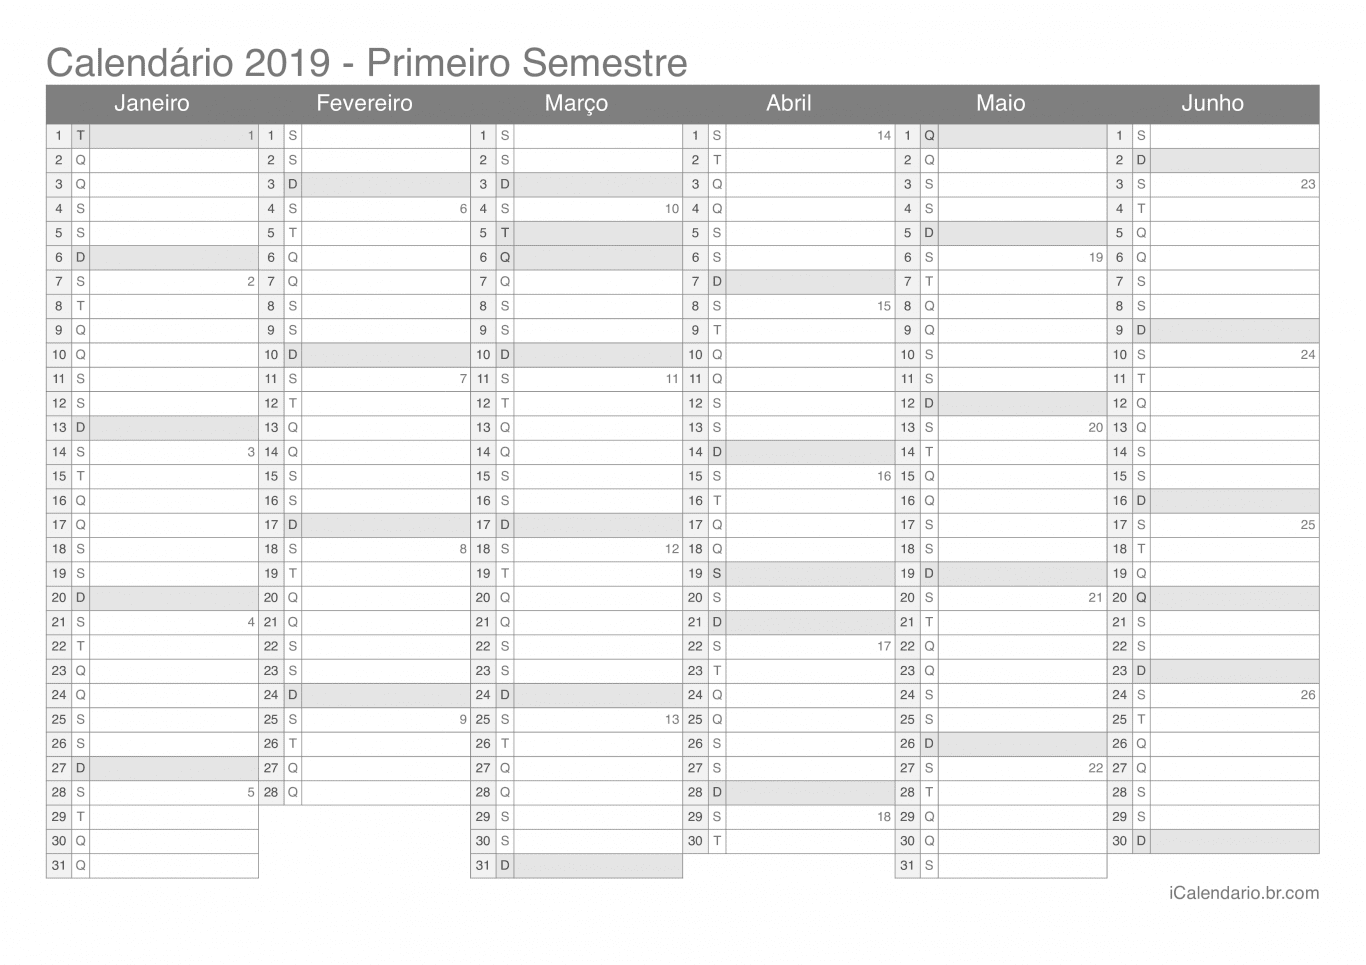 Calendário por semestre com números da semana 2019